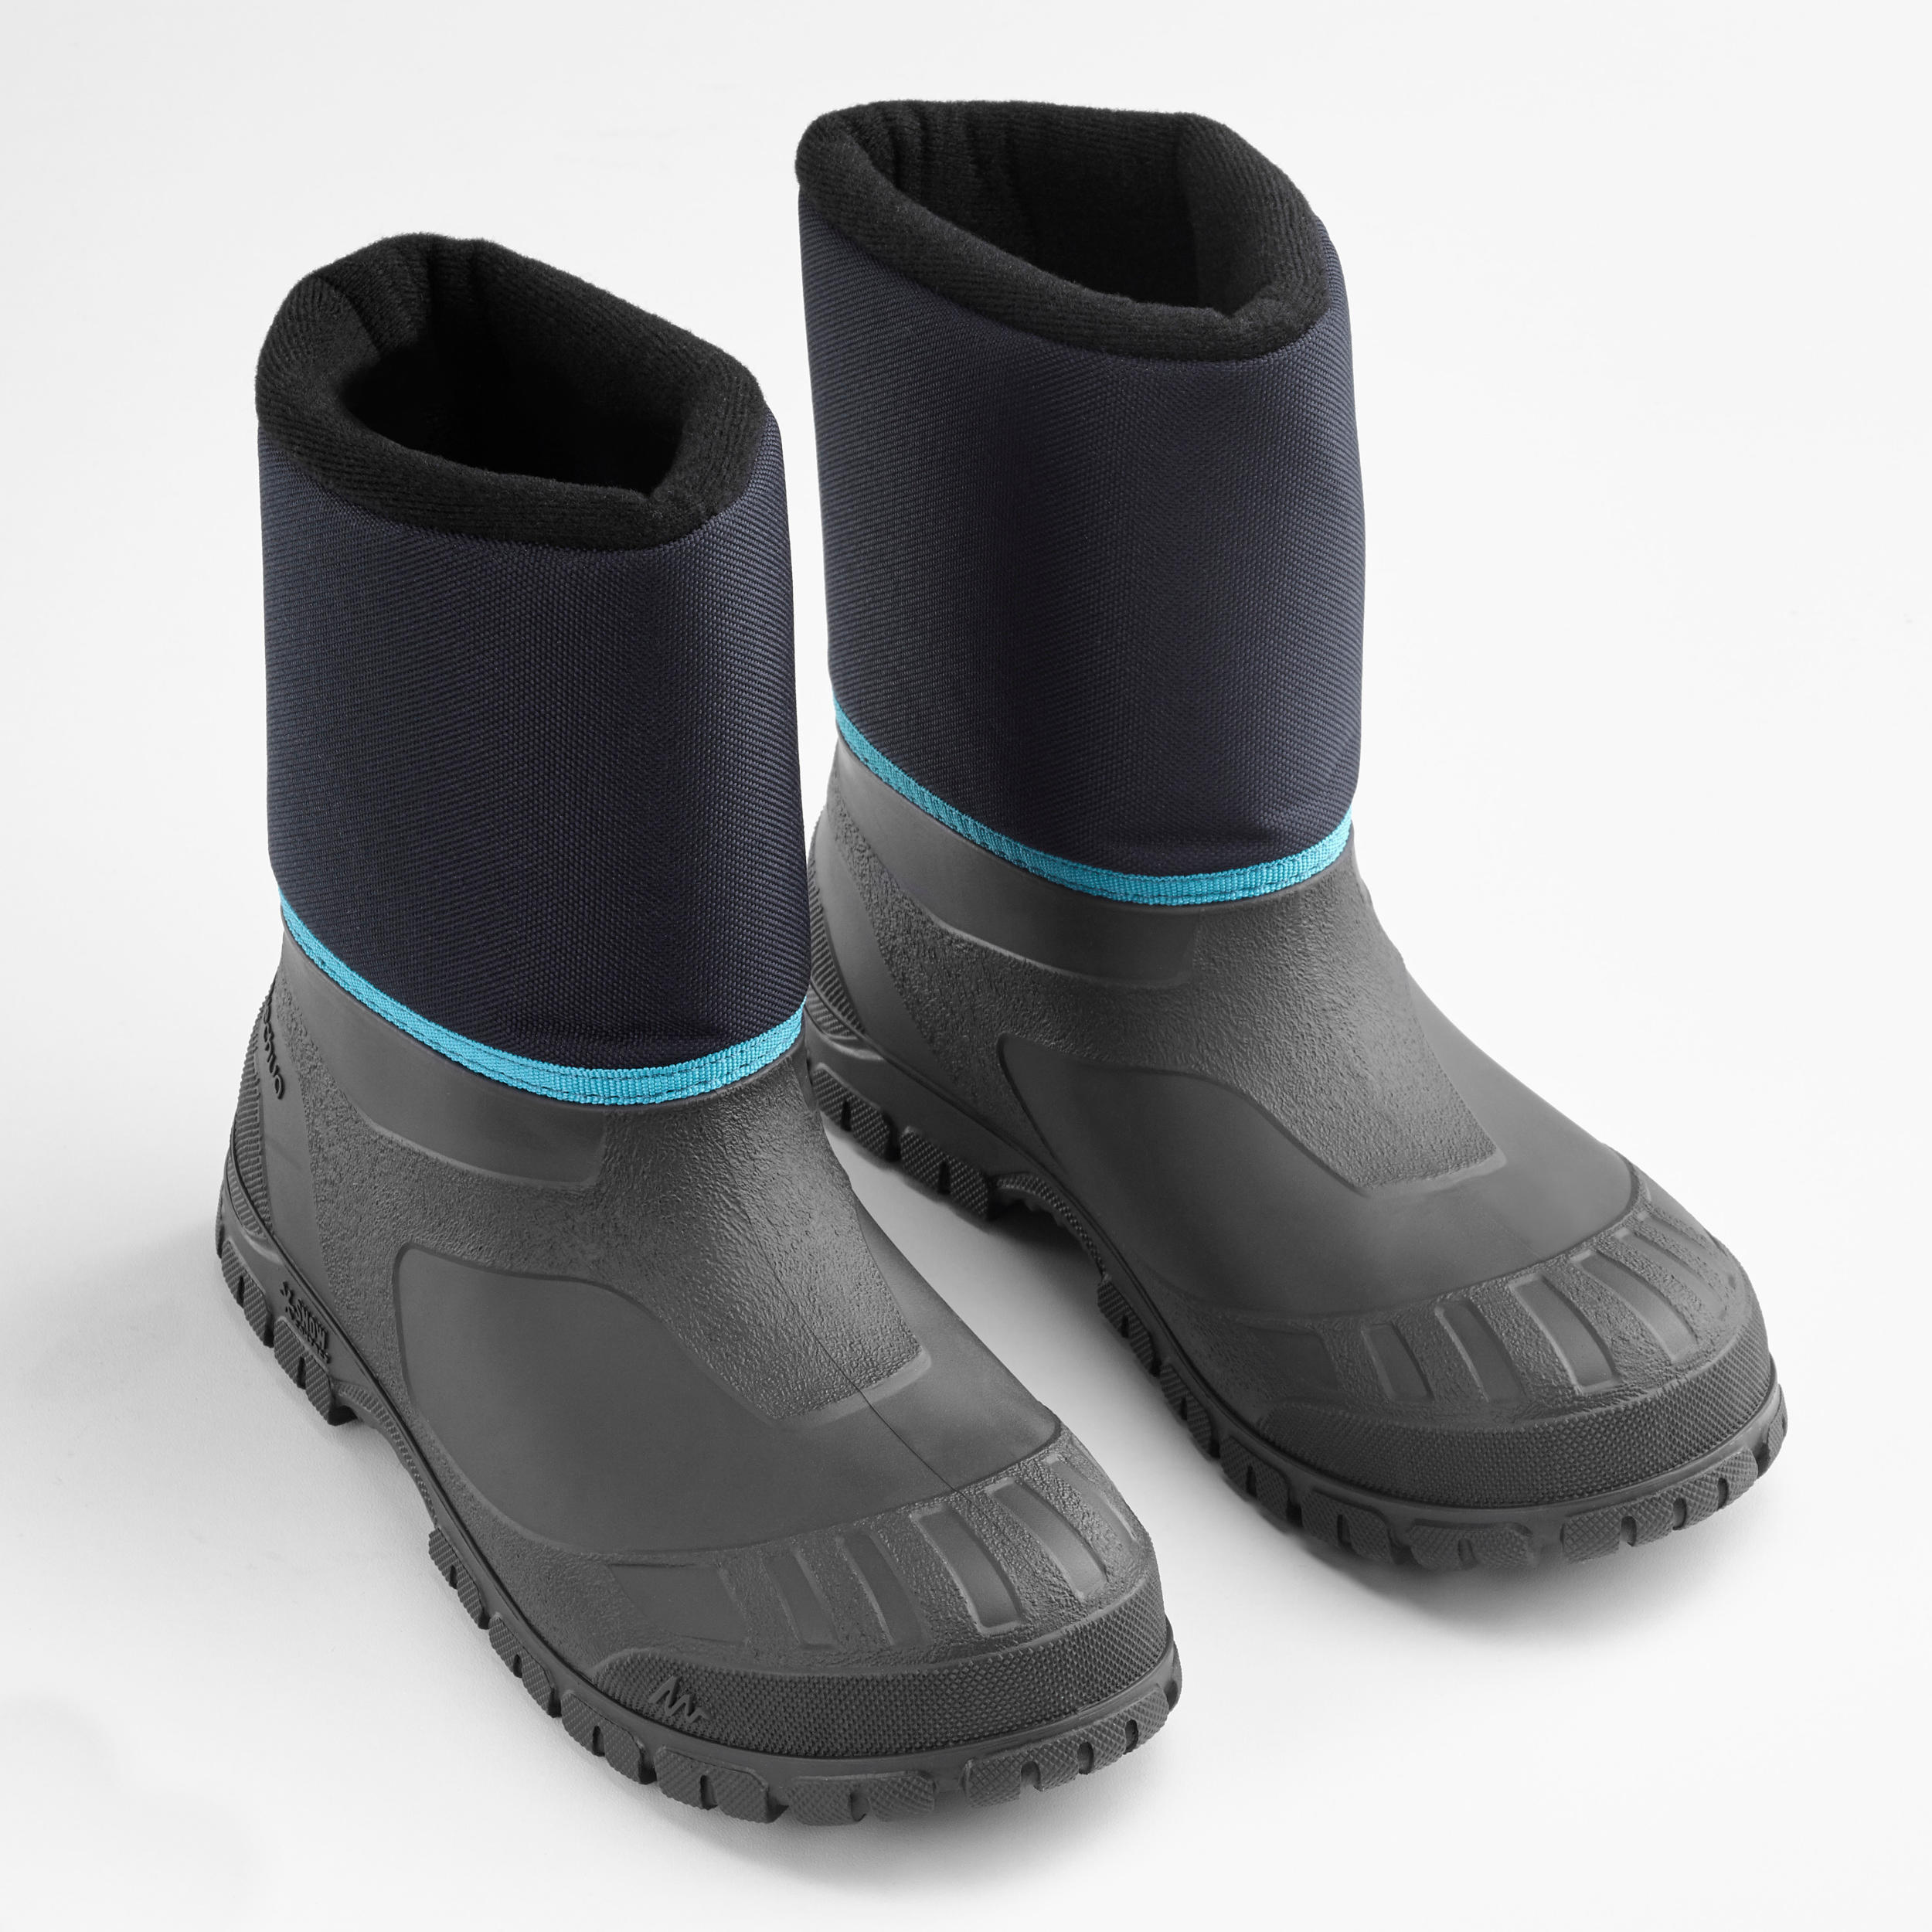 Kids’ Winter Boots - SH 100 Black - QUECHUA